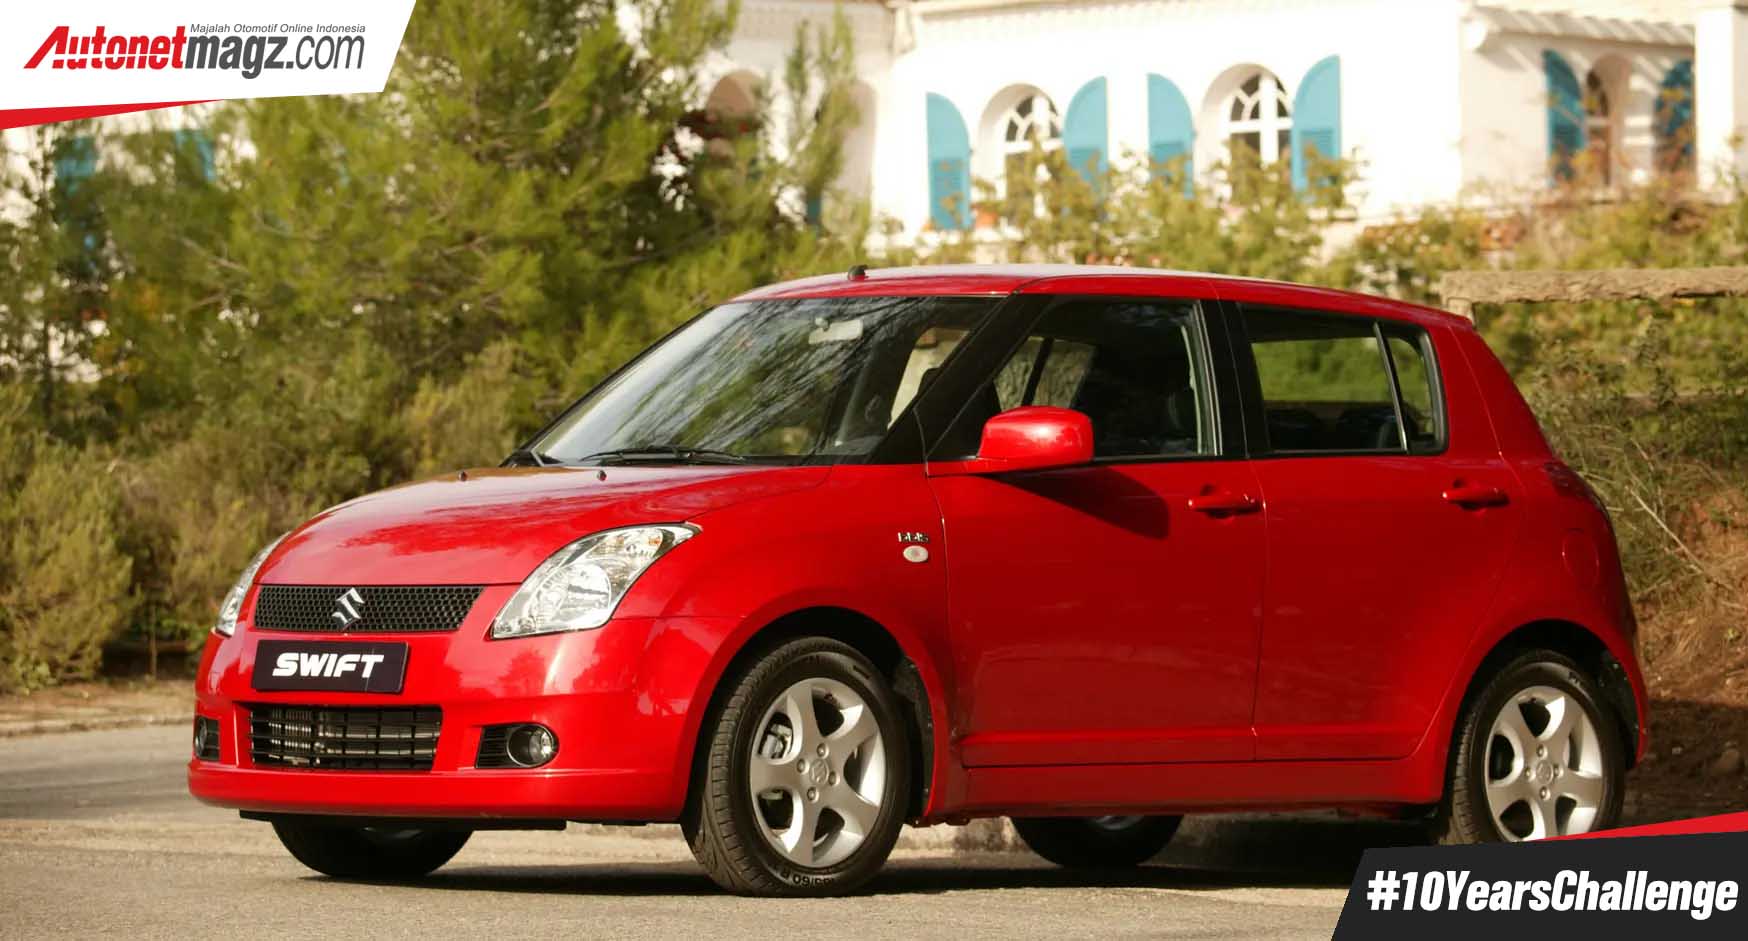 Berita, #10YearsChallenge Suzuki Swift: #10YearsChallenge : 7 Mobil Berusia 10 Tahun Yang Tinggal Kenangan